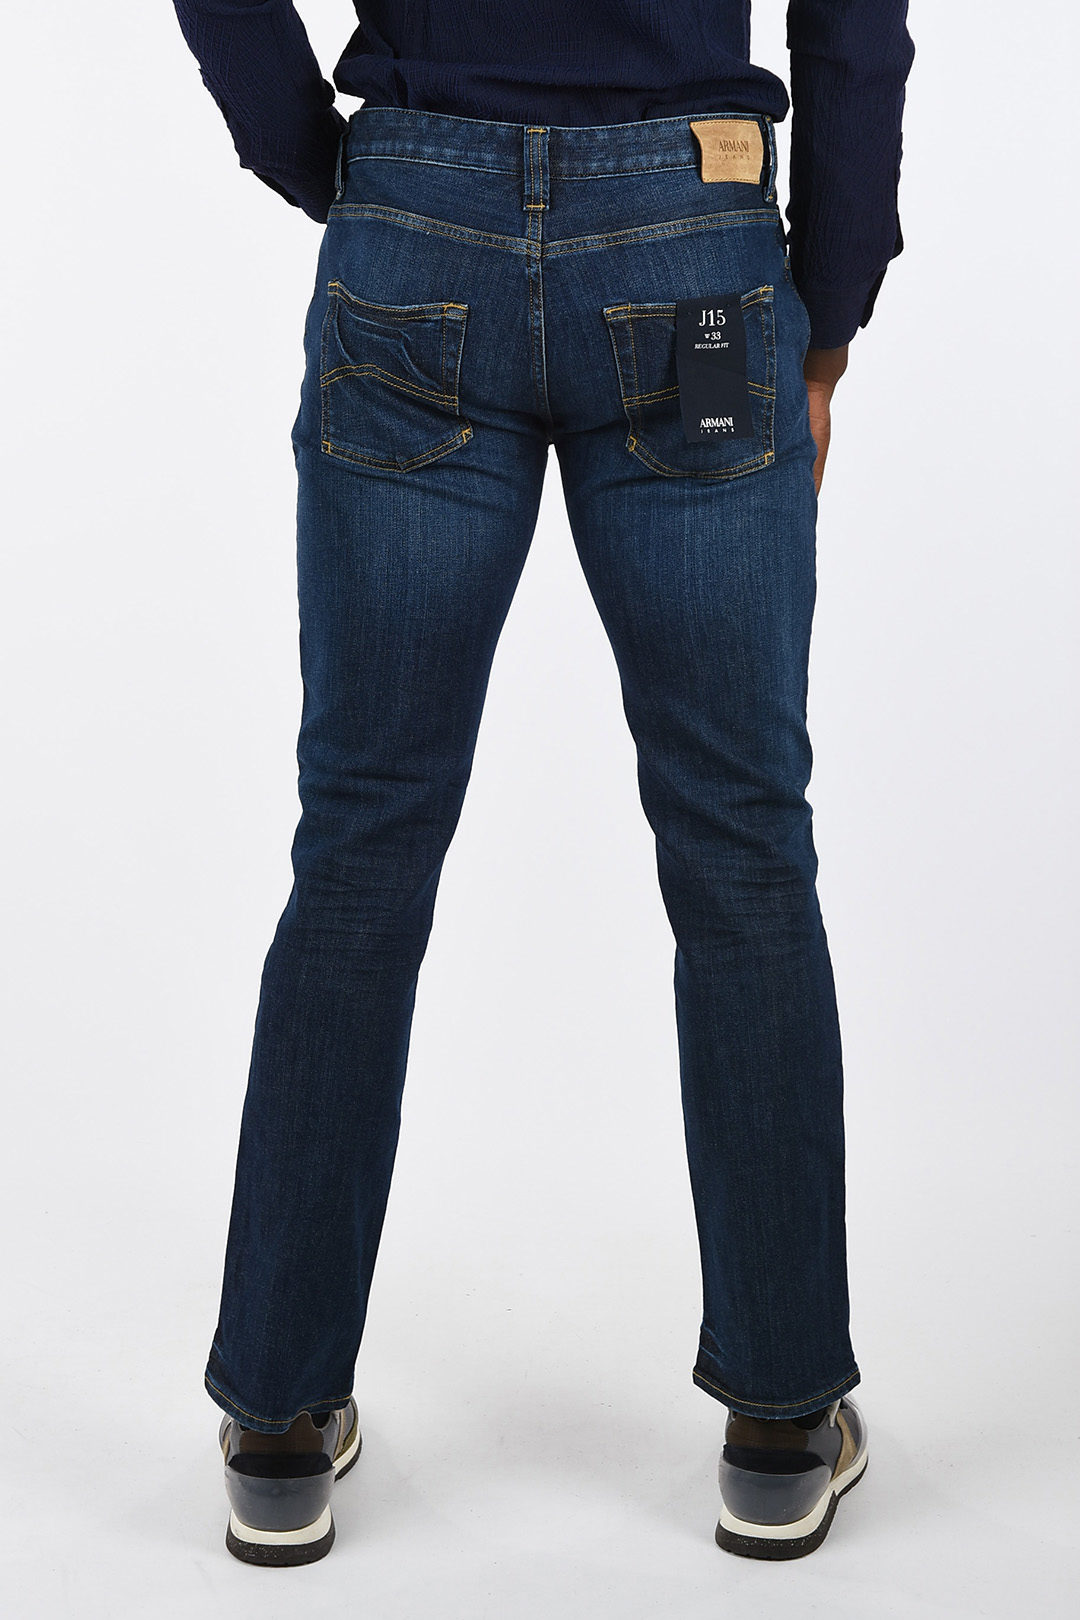 armani jeans j15